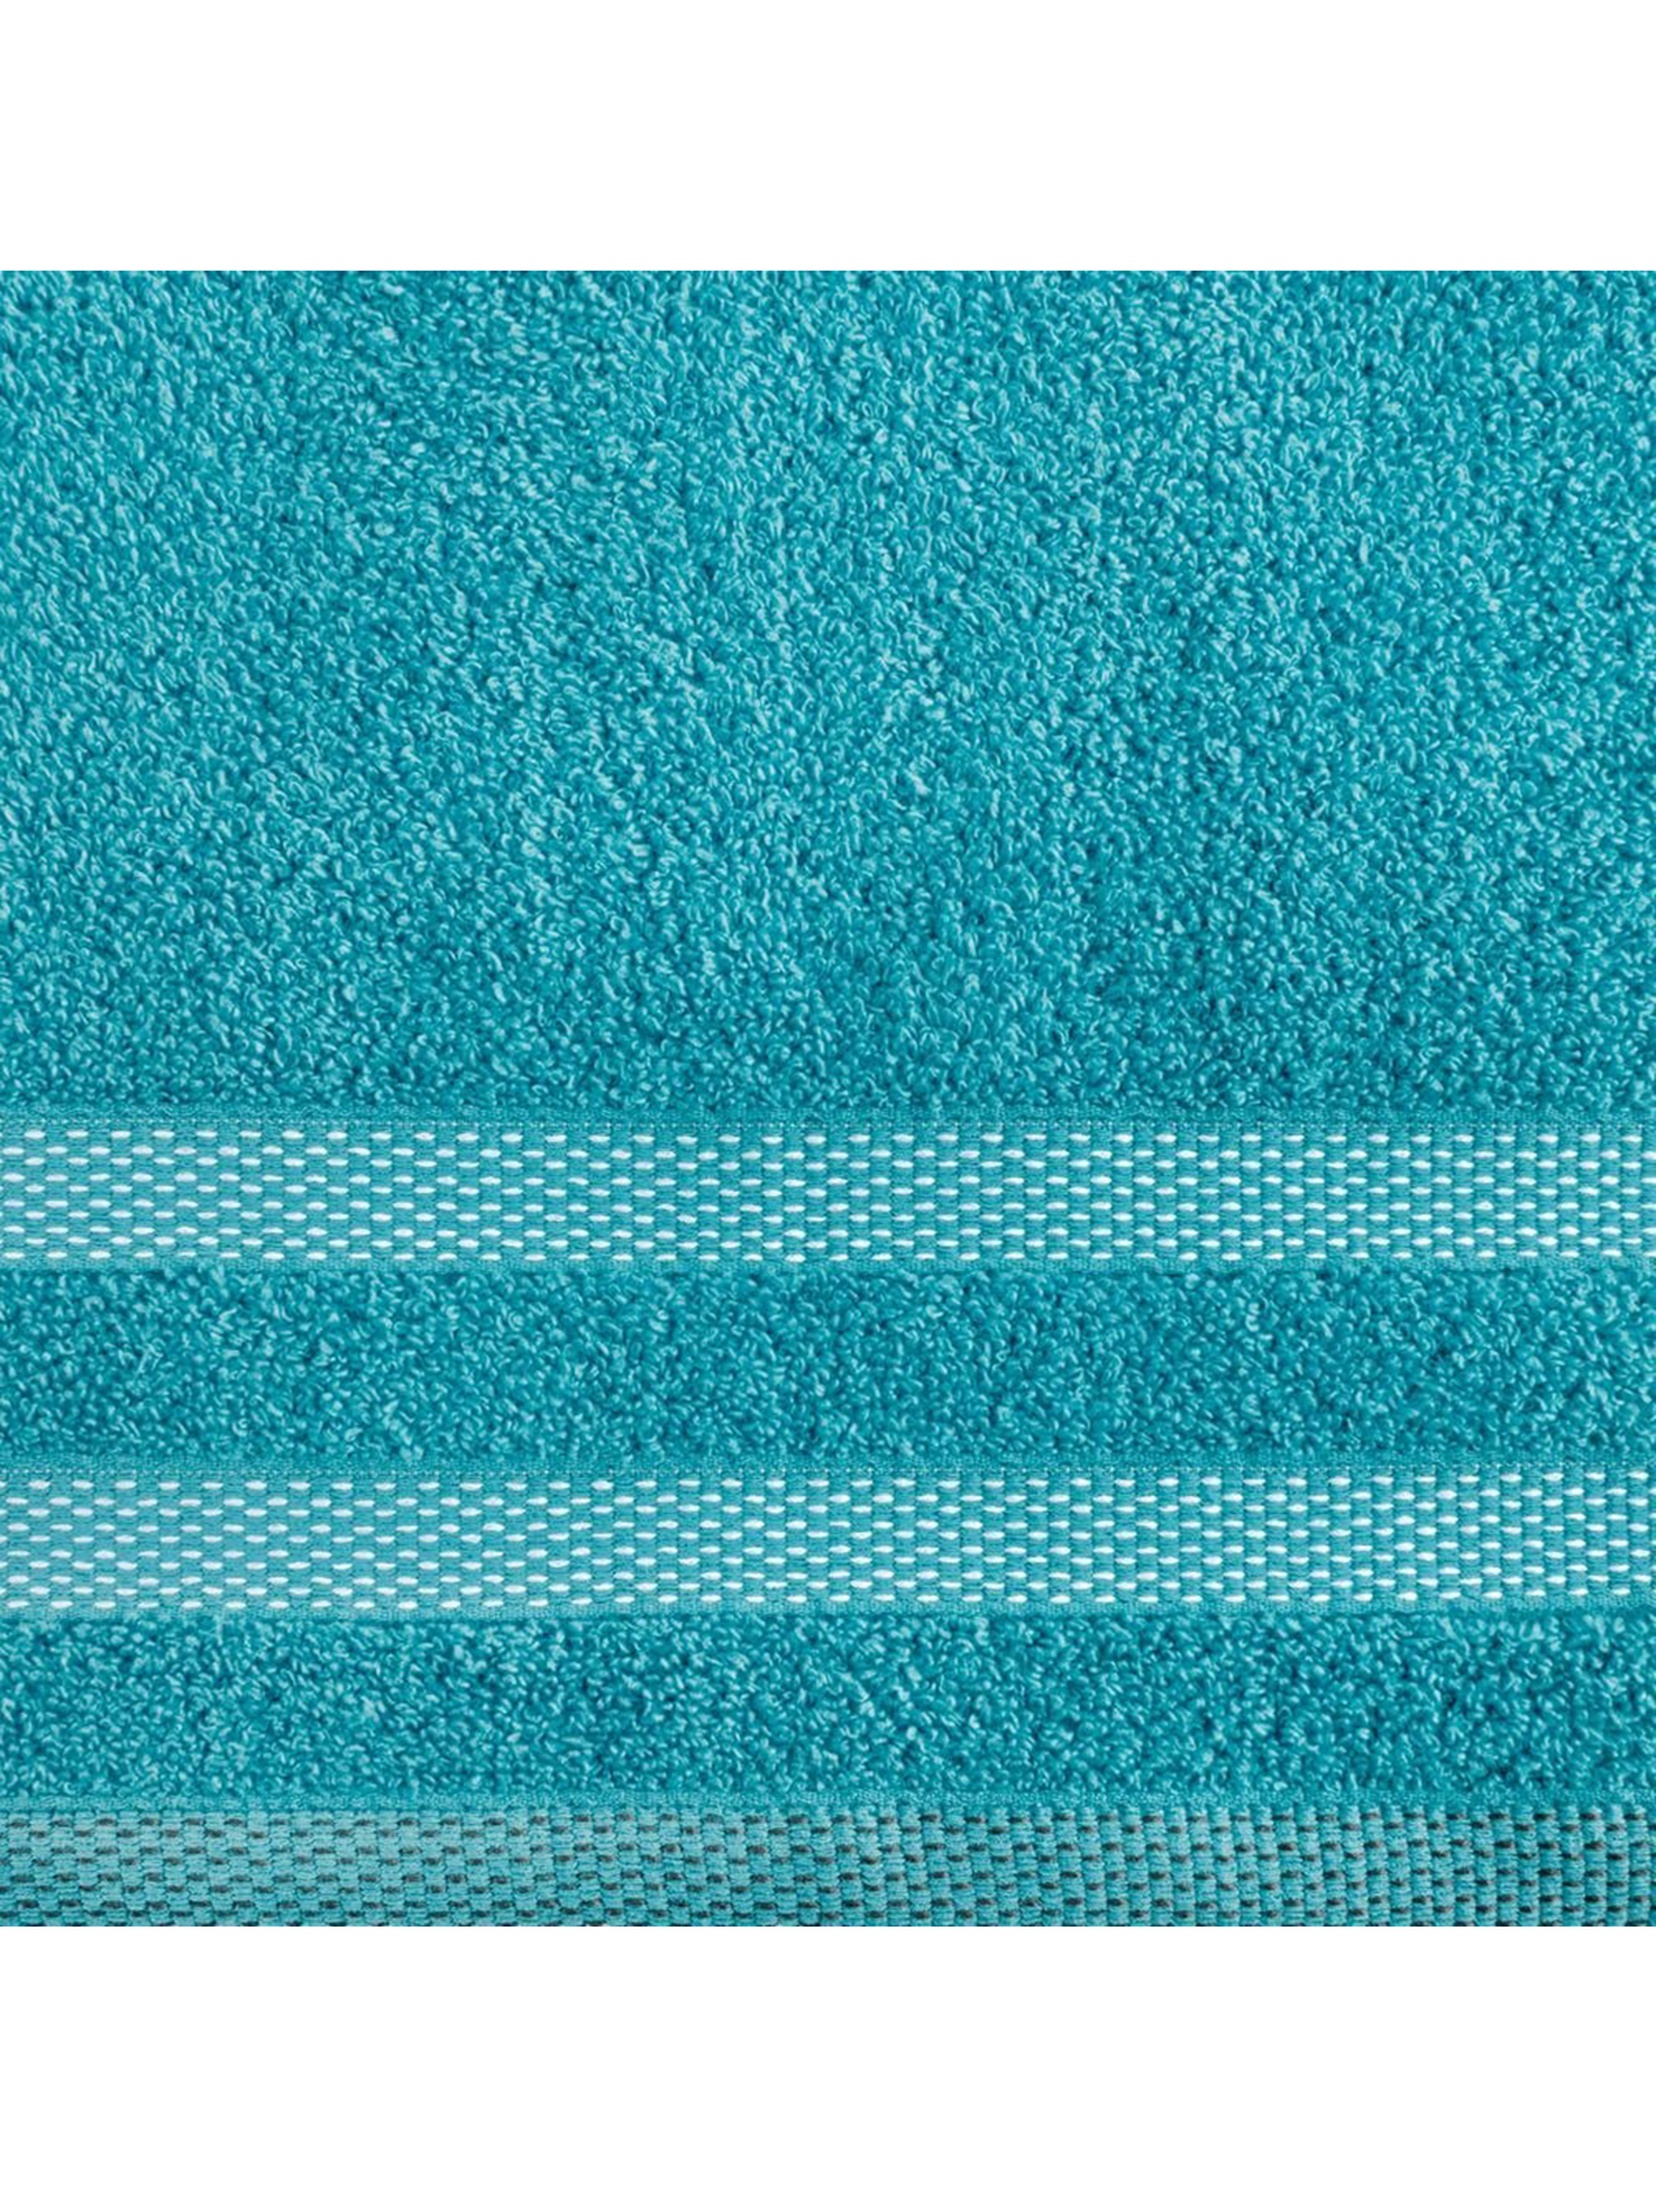 Ręcznik Riki 70x140 cm jasno turkusowy